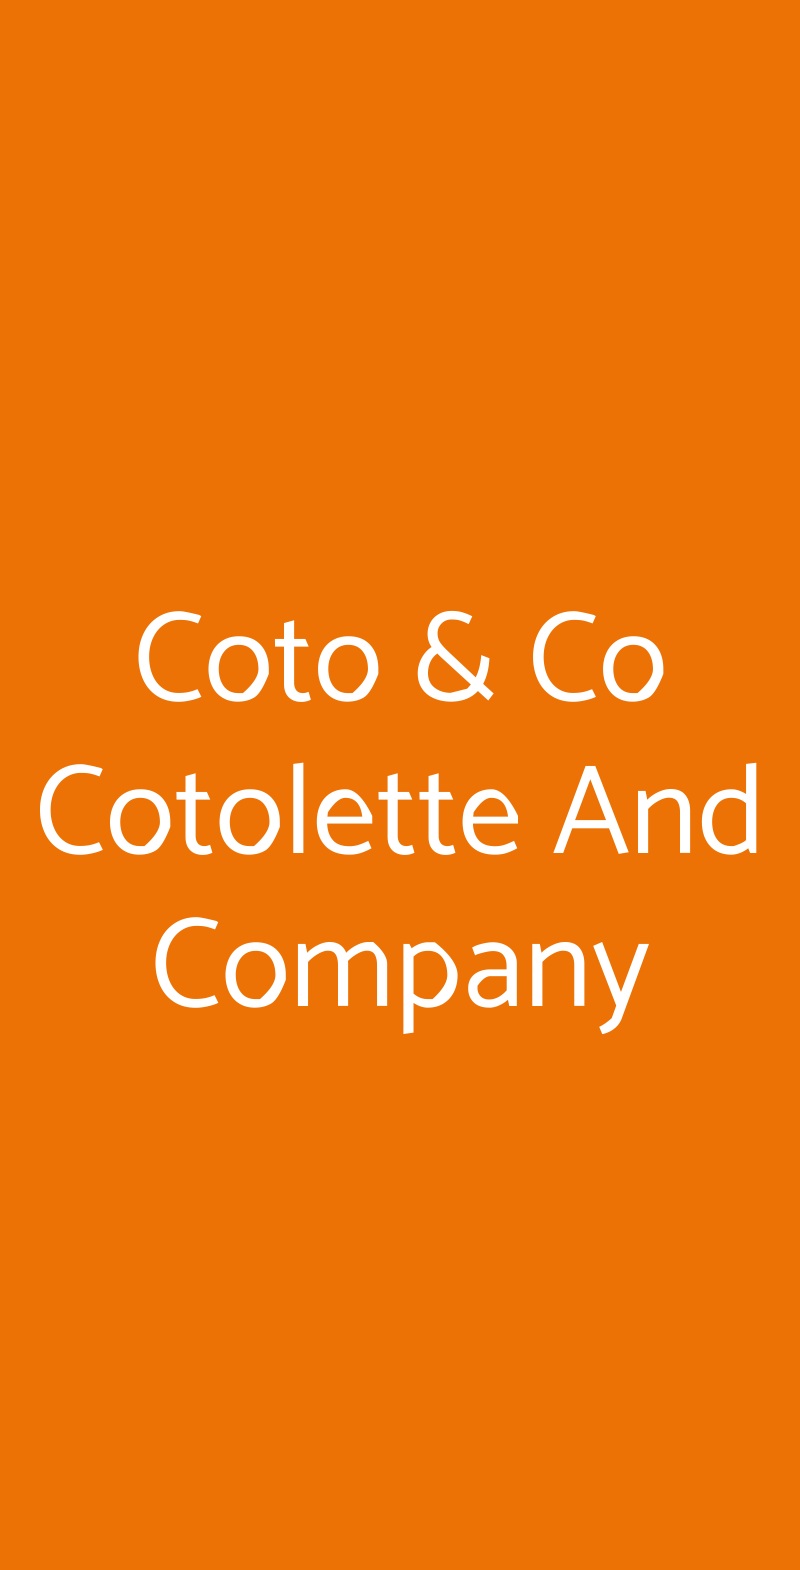 Coto & Co Cotolette And Company Bologna menù 1 pagina